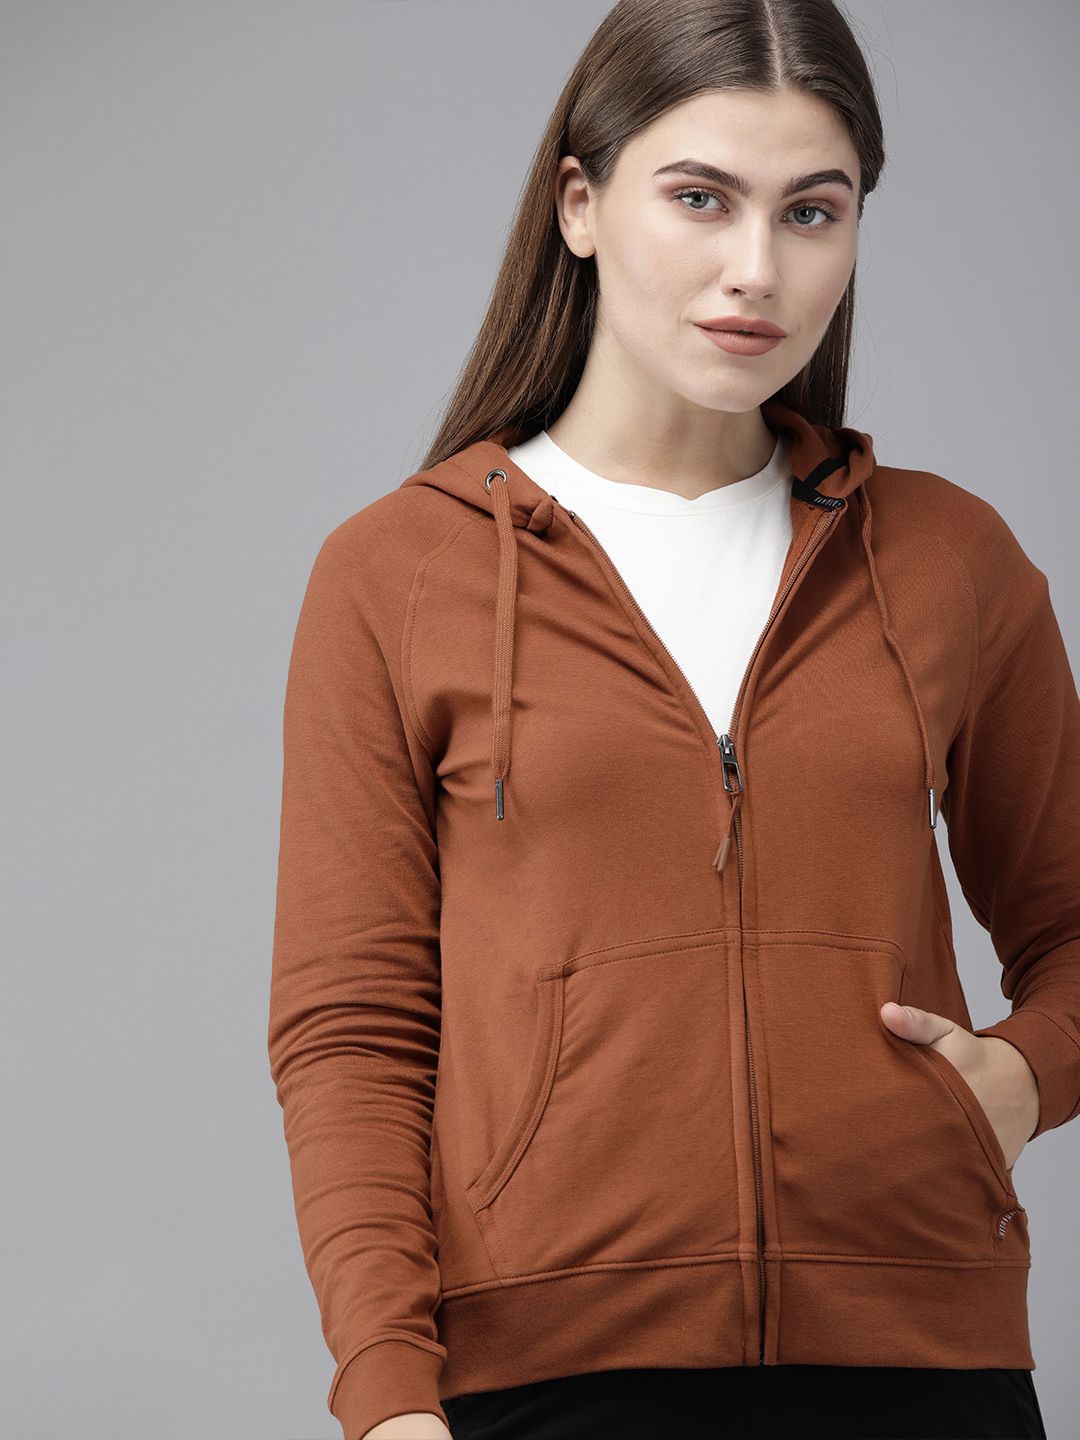 Van Heusen Woman Women Rust Brown Solid Hooded Sweatshirt Price in India